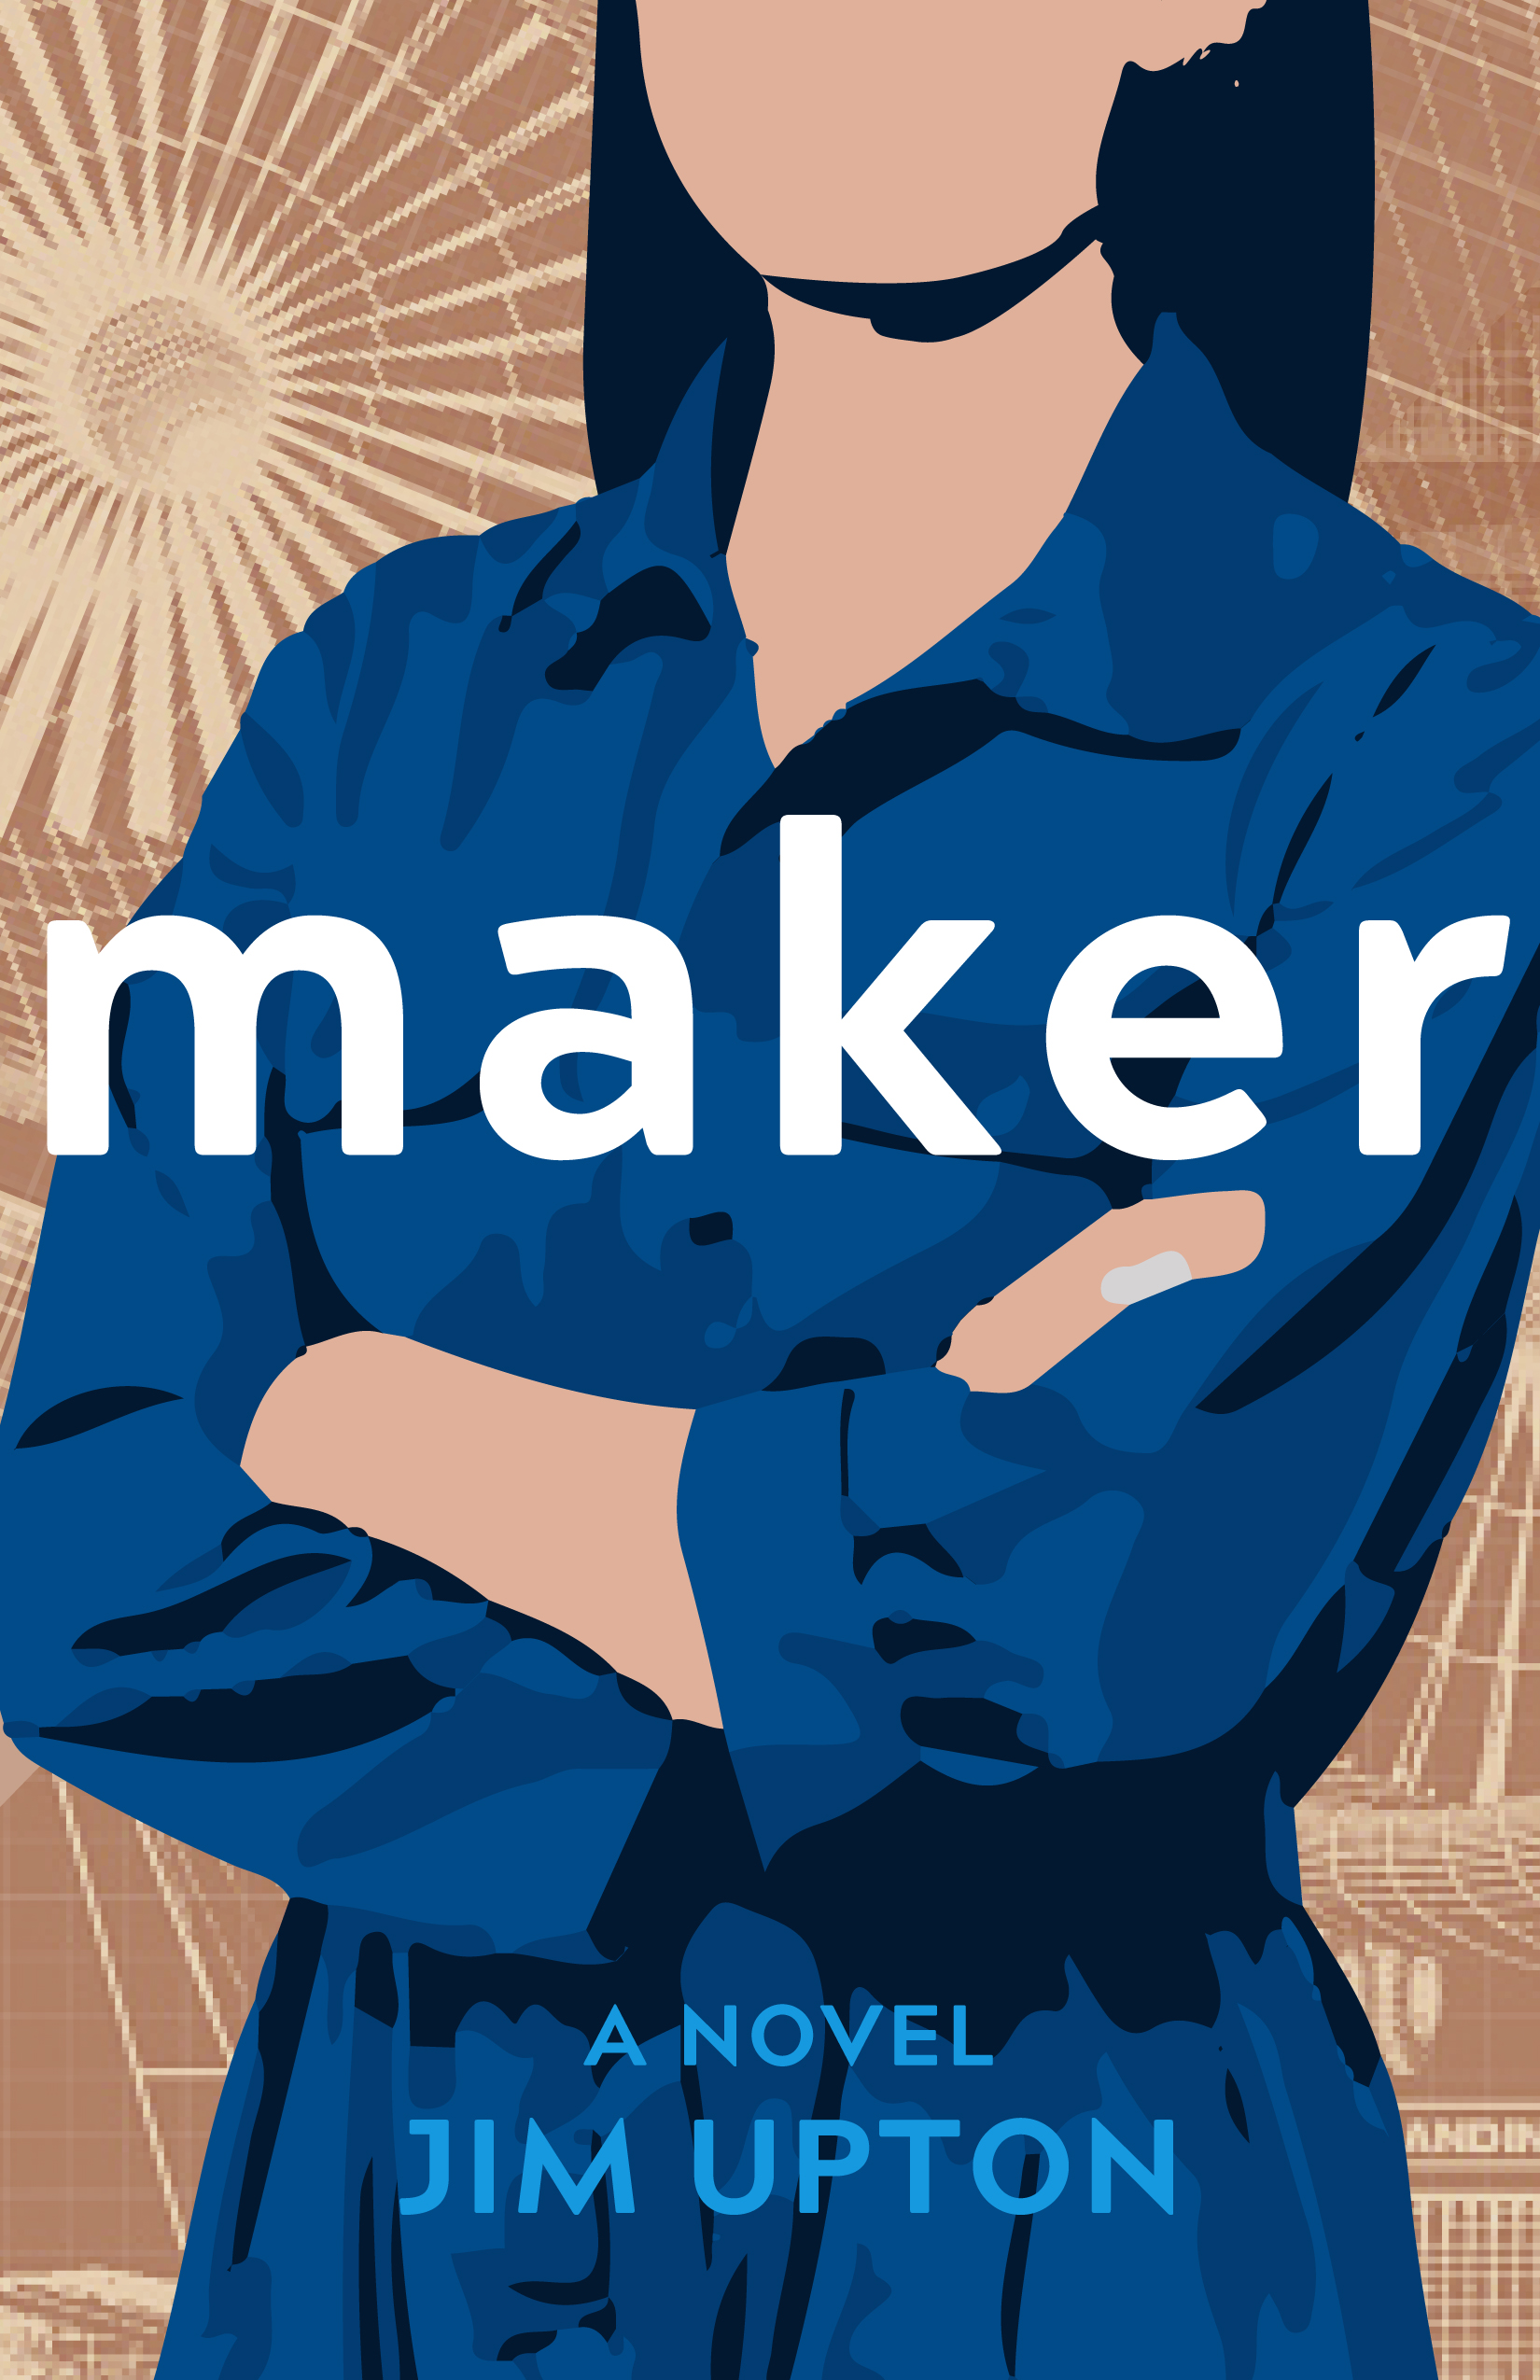 Maker